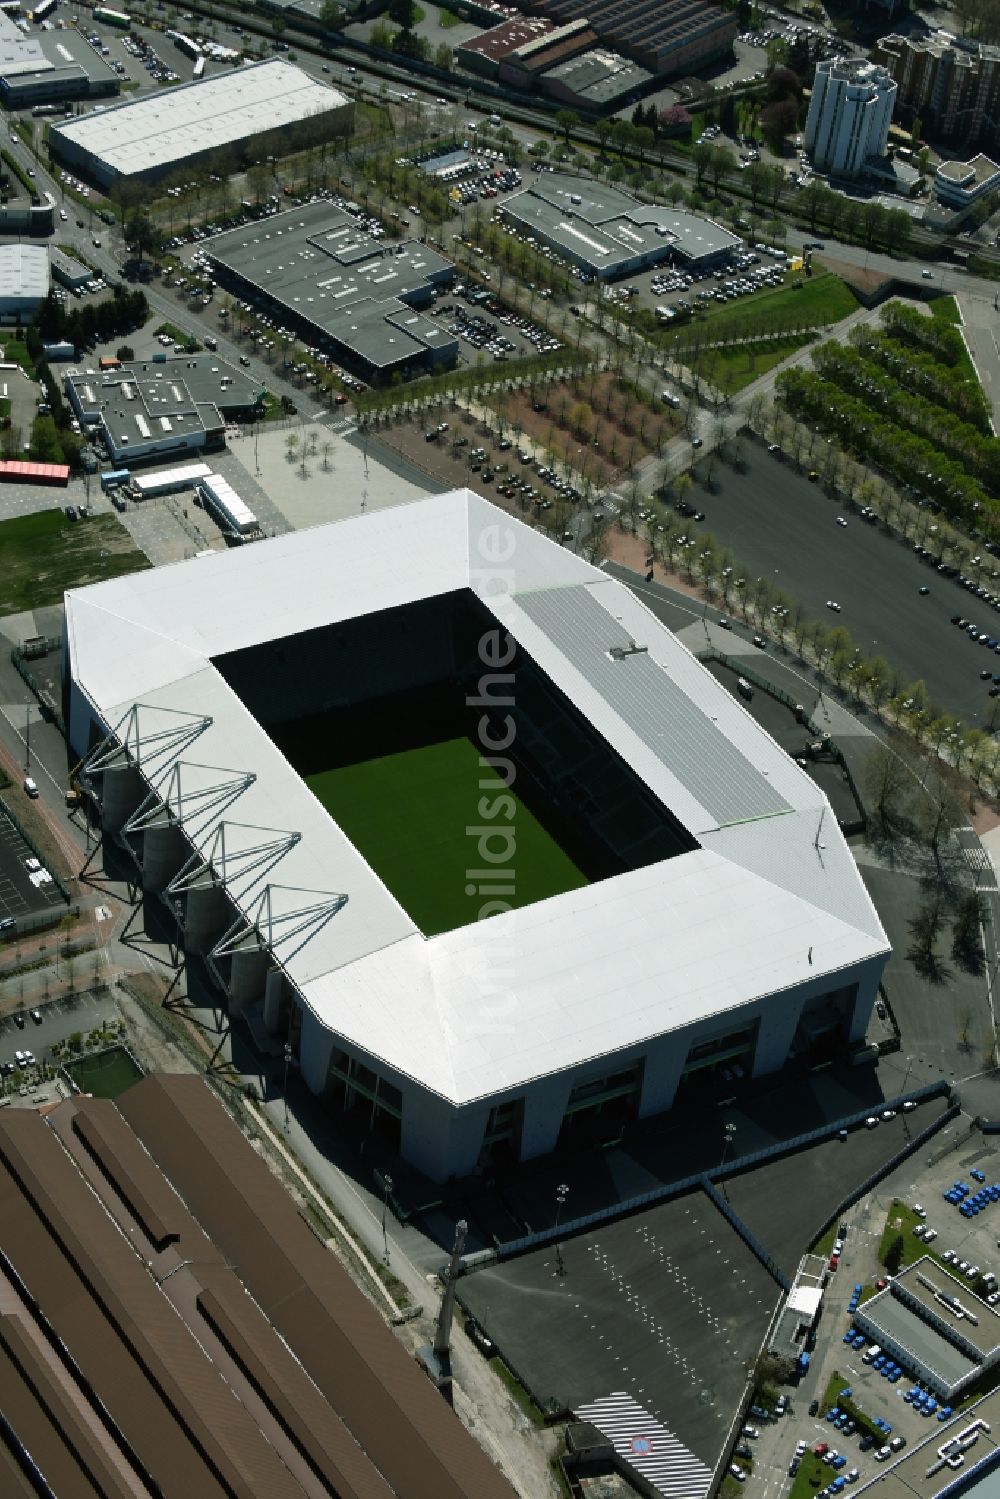 Saint-Etienne von oben - Sportstätten-Gelände der Arena des Stadion in Saint-Etienne in Auvergne Rhone-Alpes, Frankreich